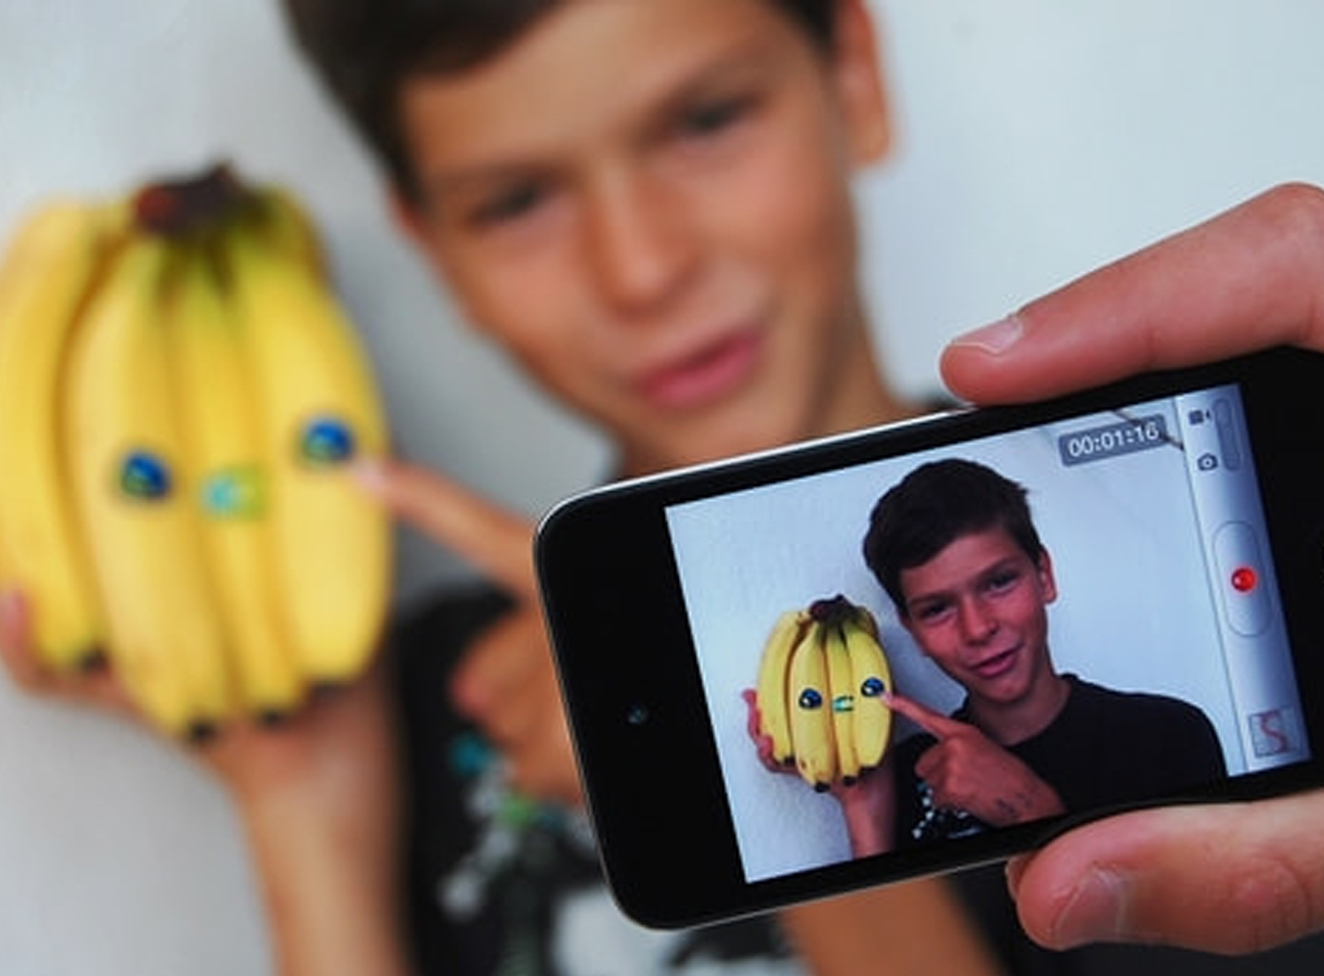 Bild: Jugendlicher mit Handy und Öko-Bananen